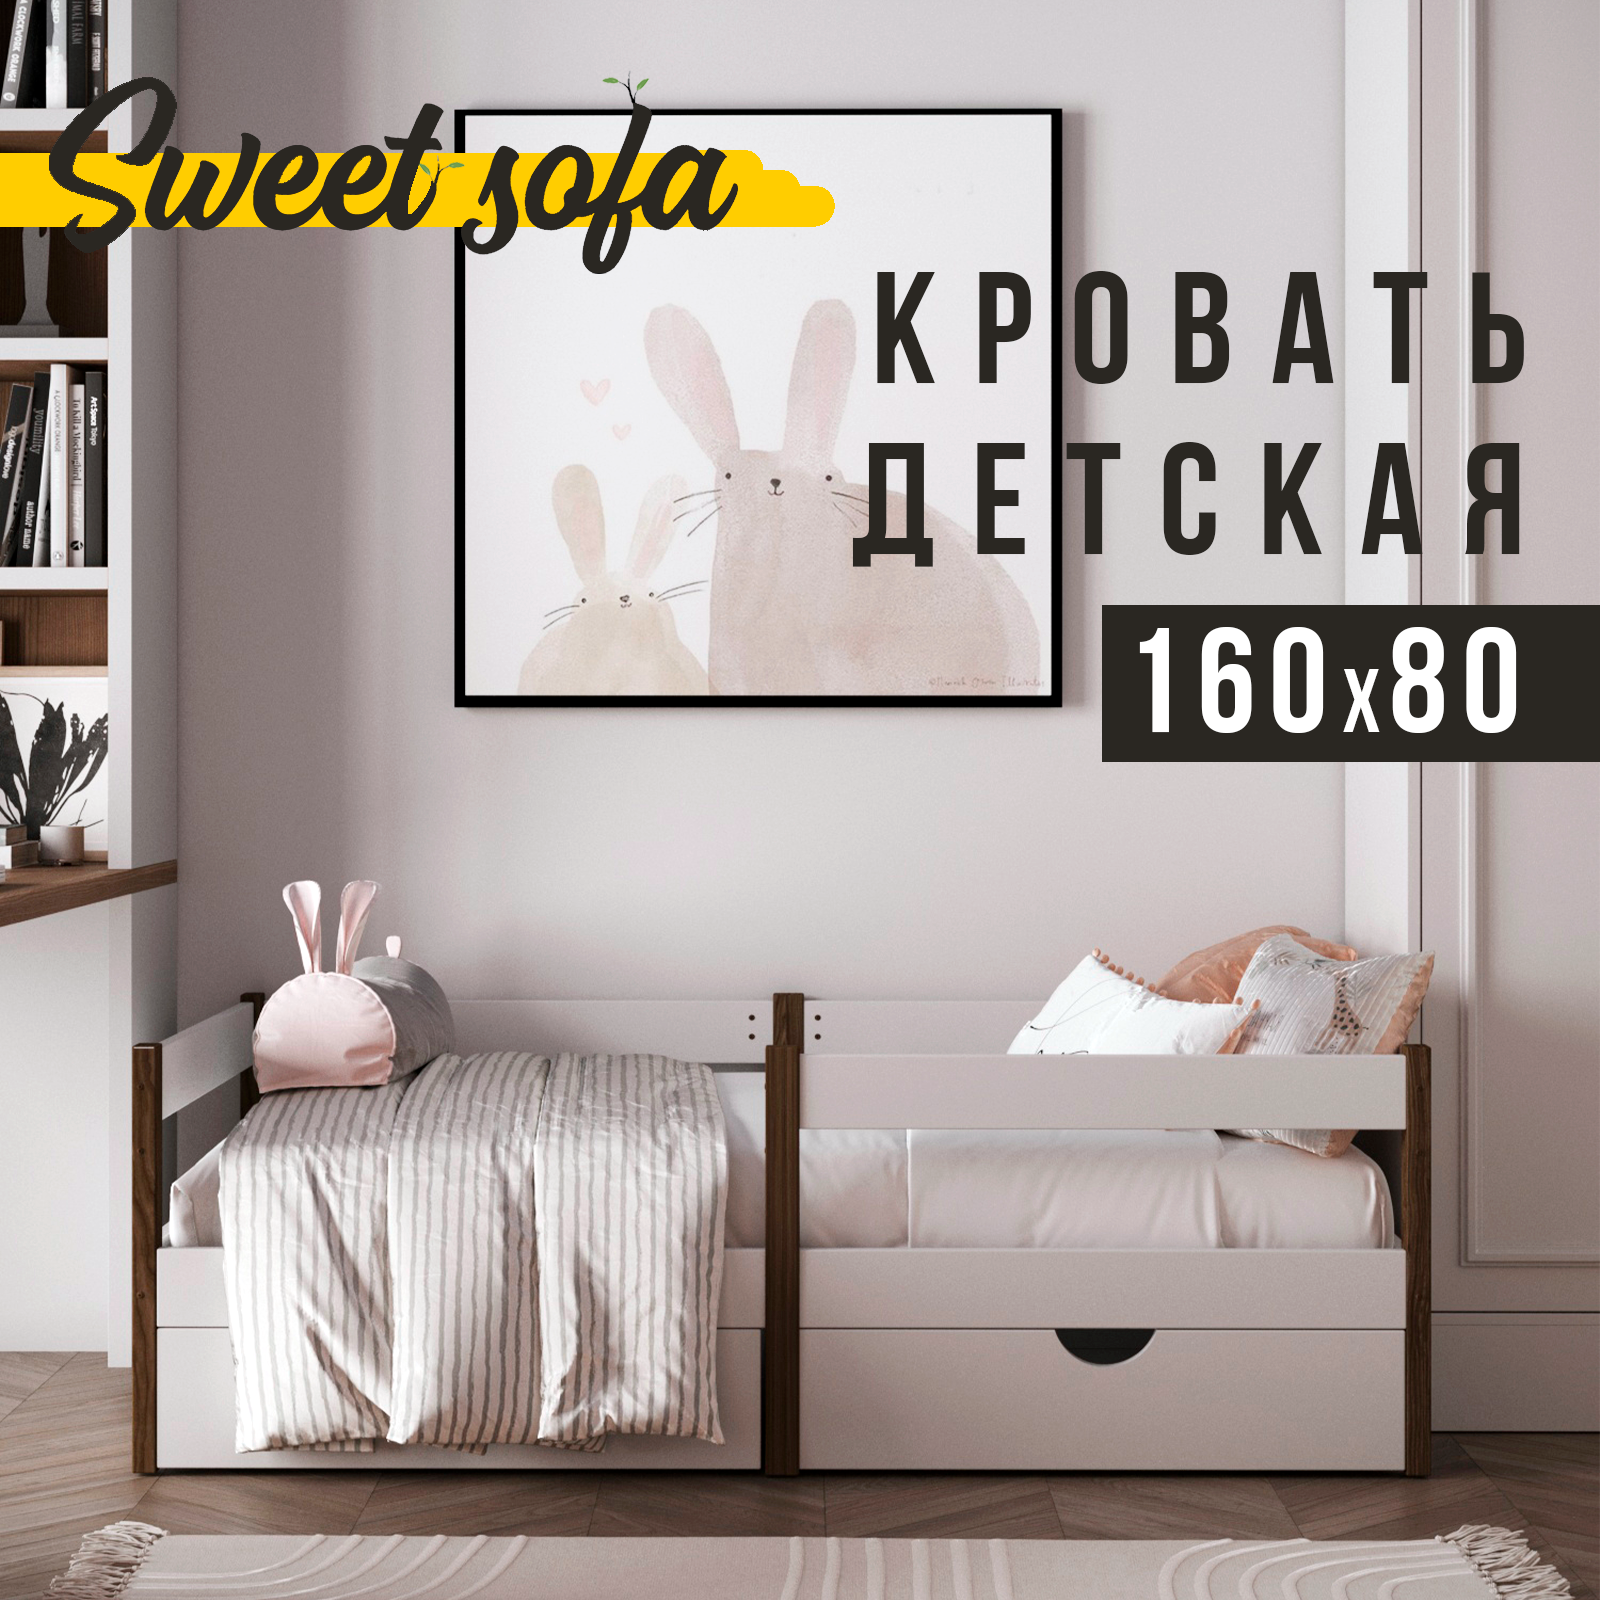 Детская кровать Sweet Sofa 160x80 c бортиком венге детская кровать sleepangel line 160x80 см с бортиком для детей от 3 х лет розовый